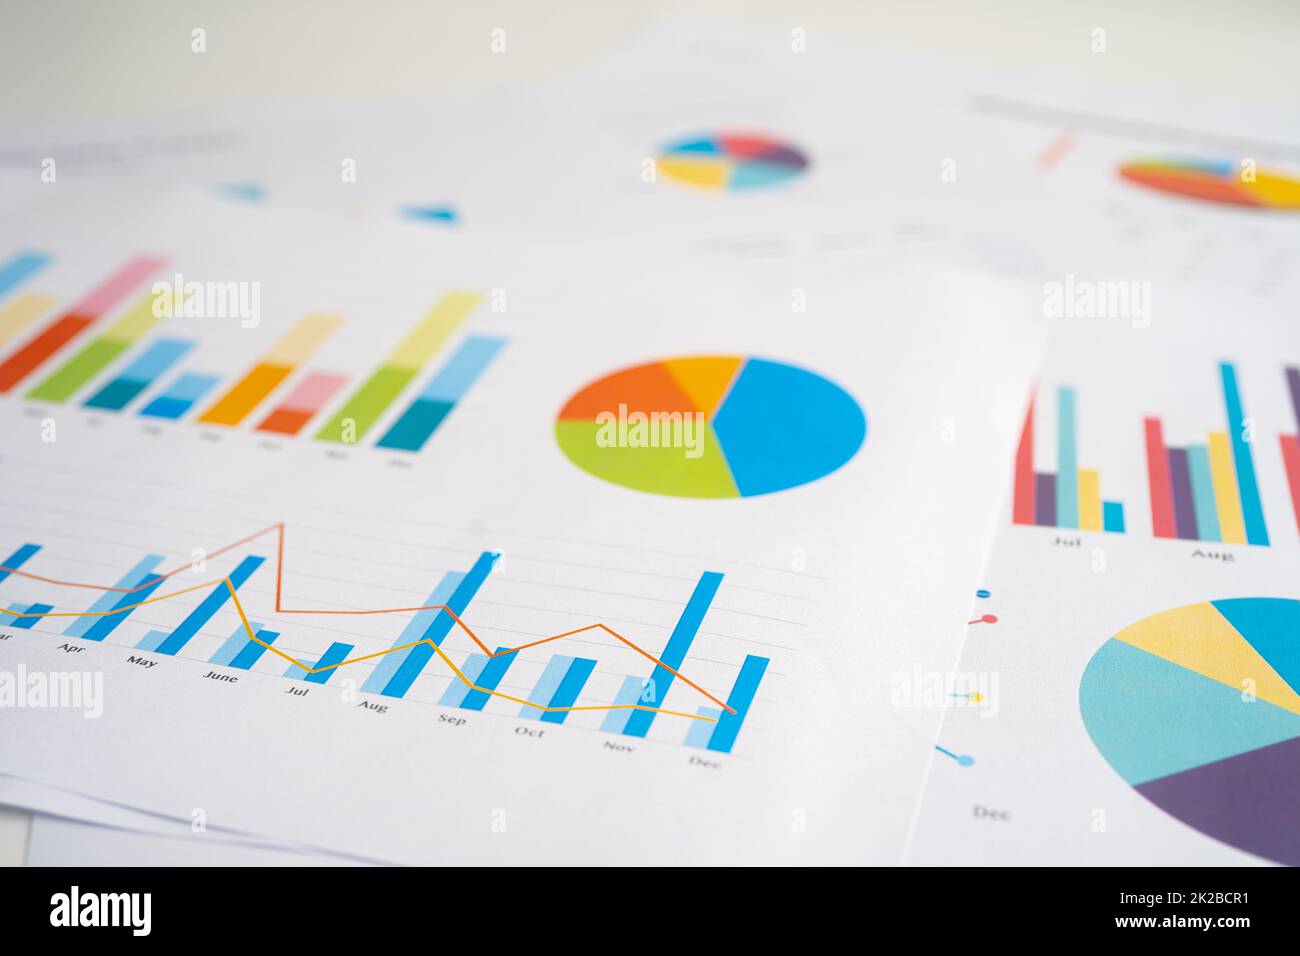 Diagramme stellt Papier grafisch dar. Finanzentwicklung, Bankkonto, Statistik, Investment Analytic Research Data Economy, Börse Geschäftsbüro Meeting-Konzept des Unternehmens. Stockfoto